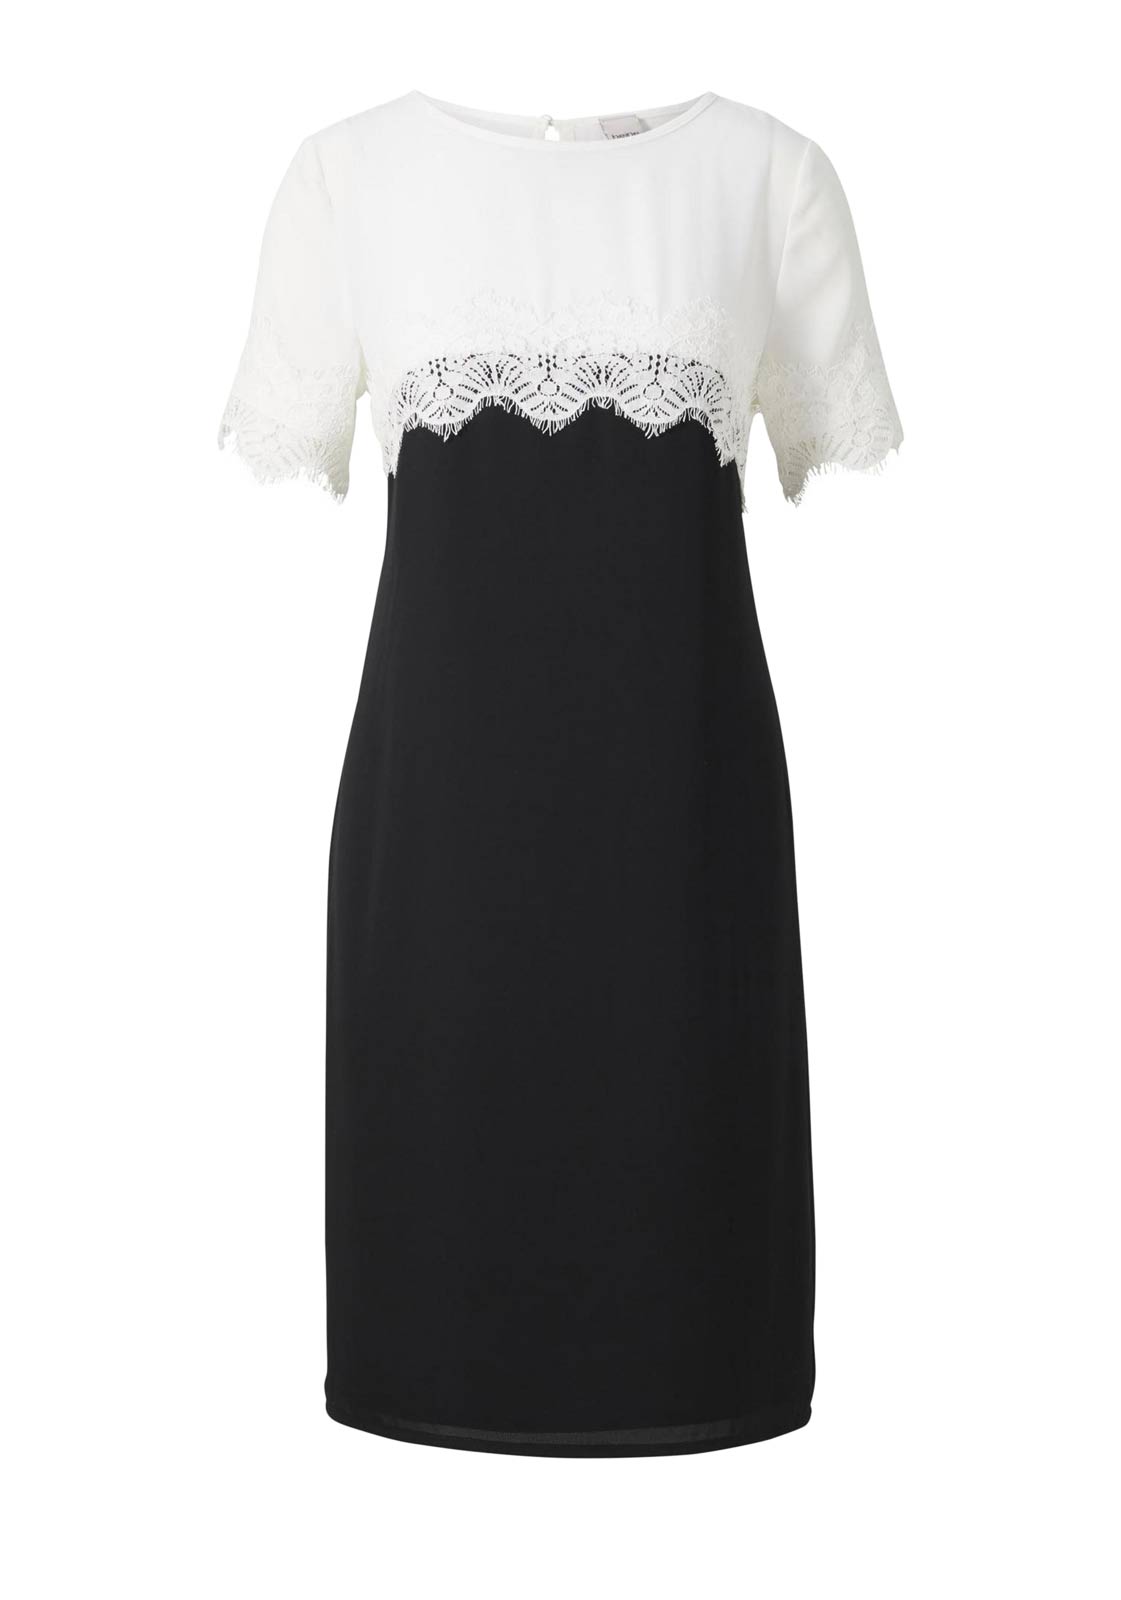 HEINE Damen Georgette-Kleid, schwarz-weiß